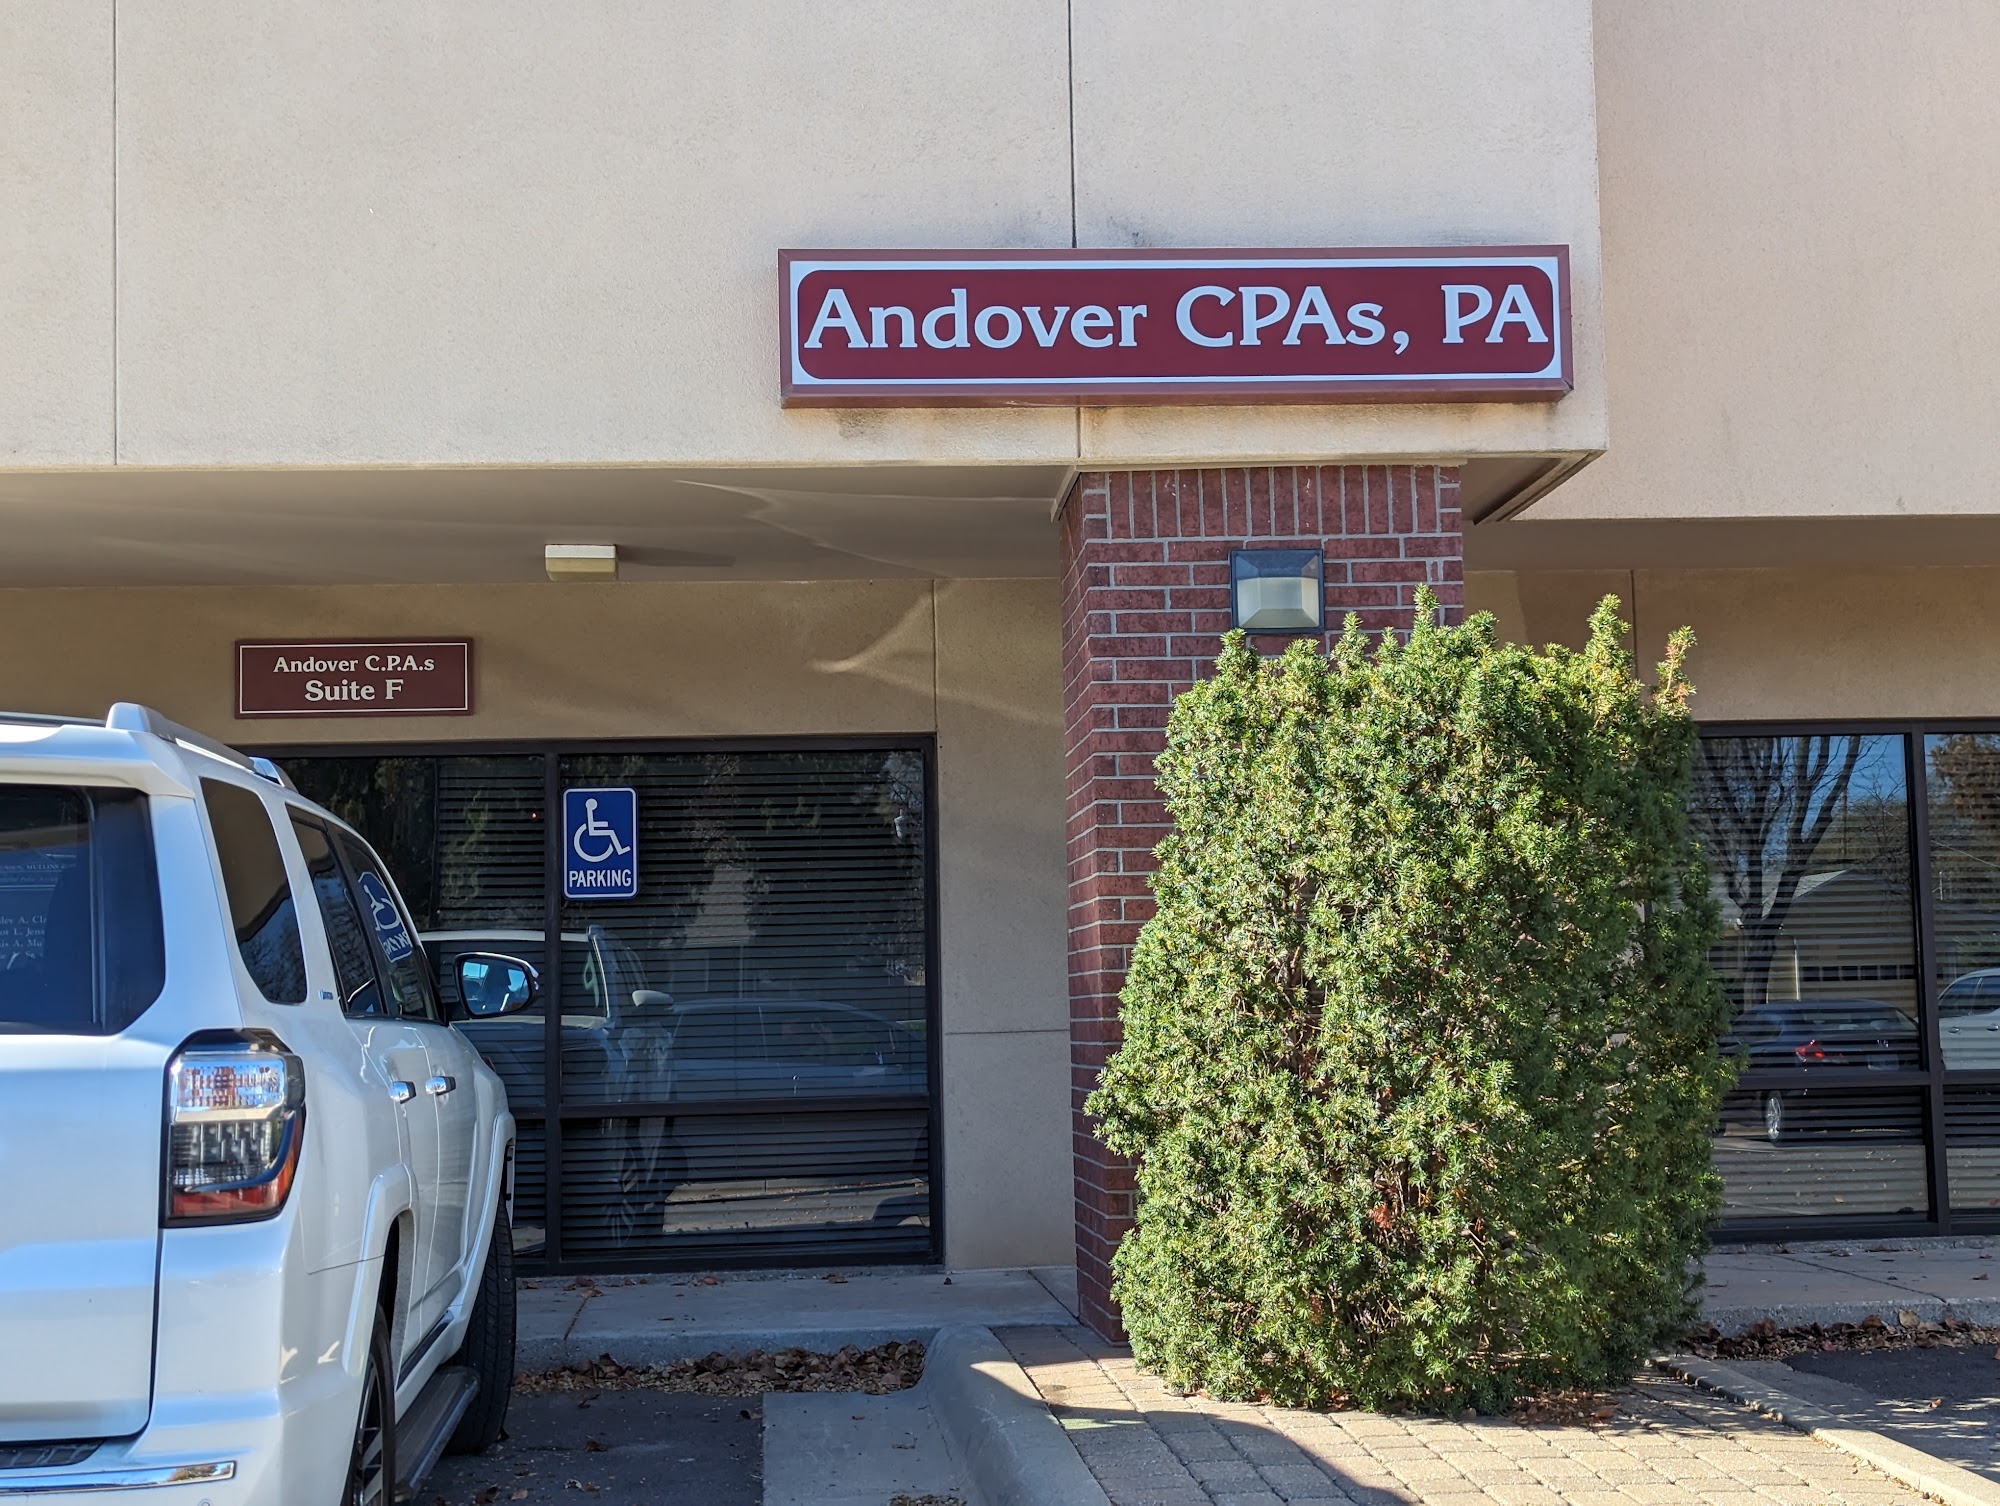 Andover CPAs, PA 105 S Andover Rd # F, Andover Kansas 67002